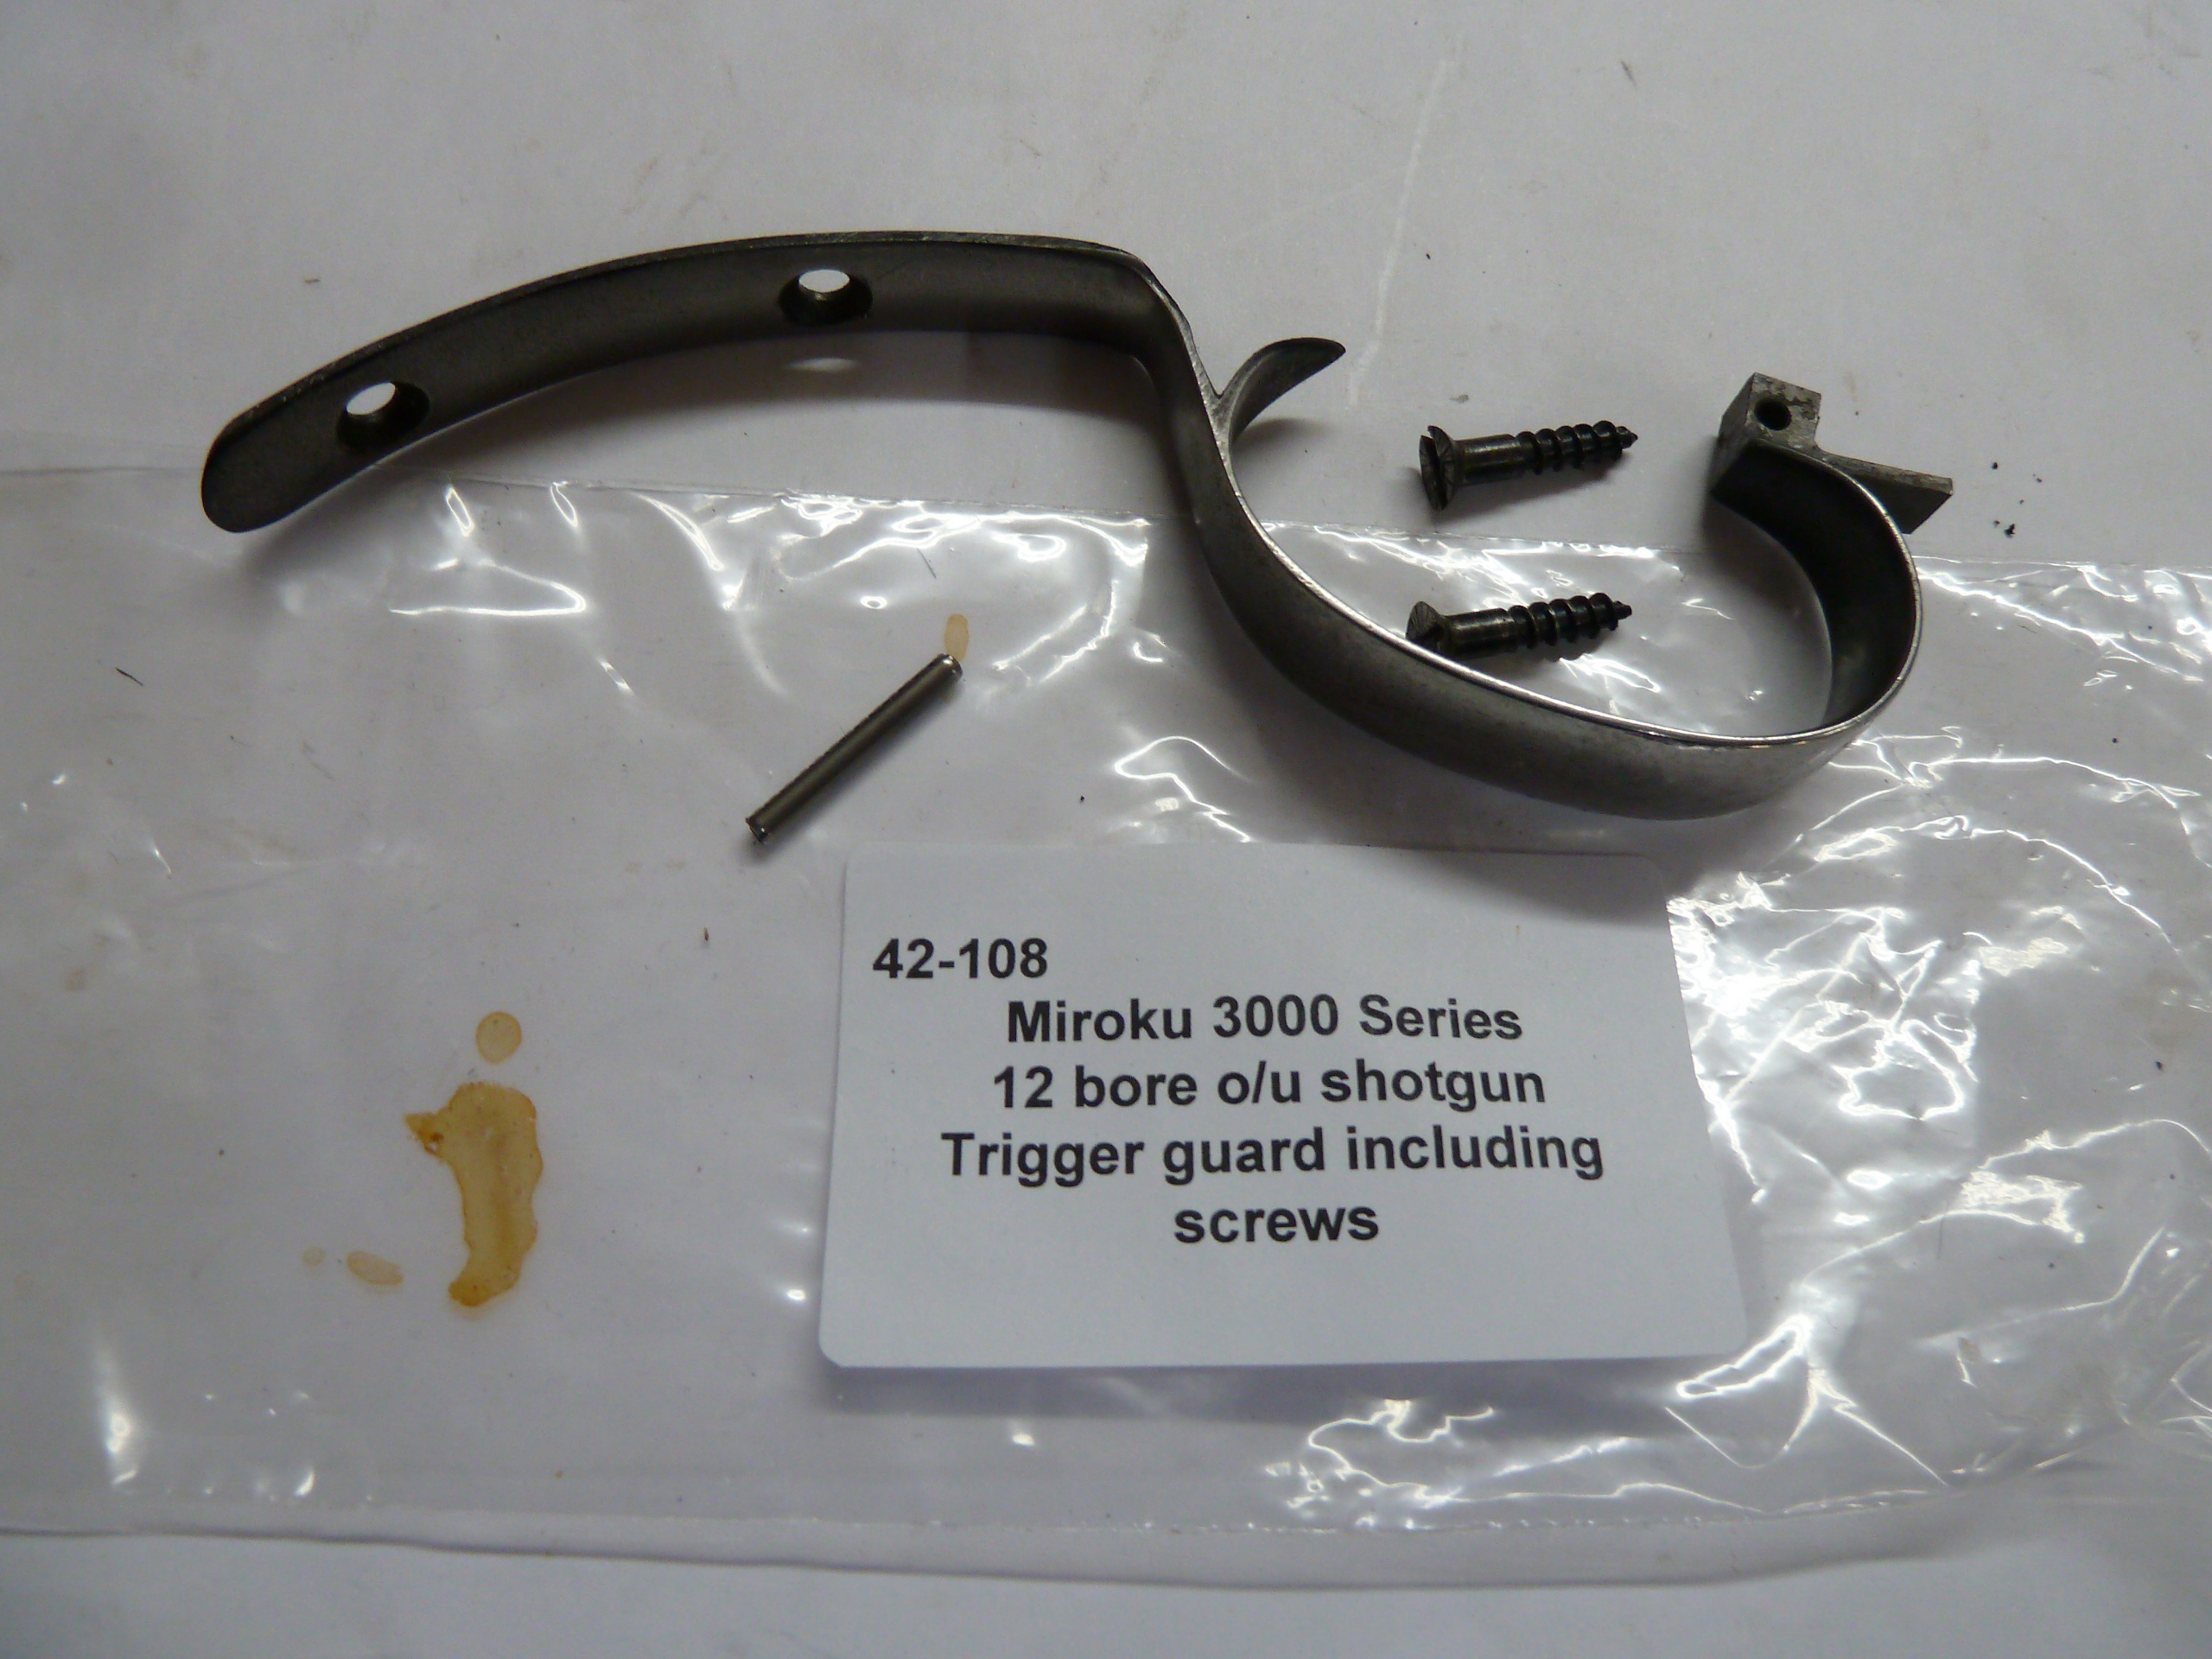 42-108 Miroku 3000 series trigger guard